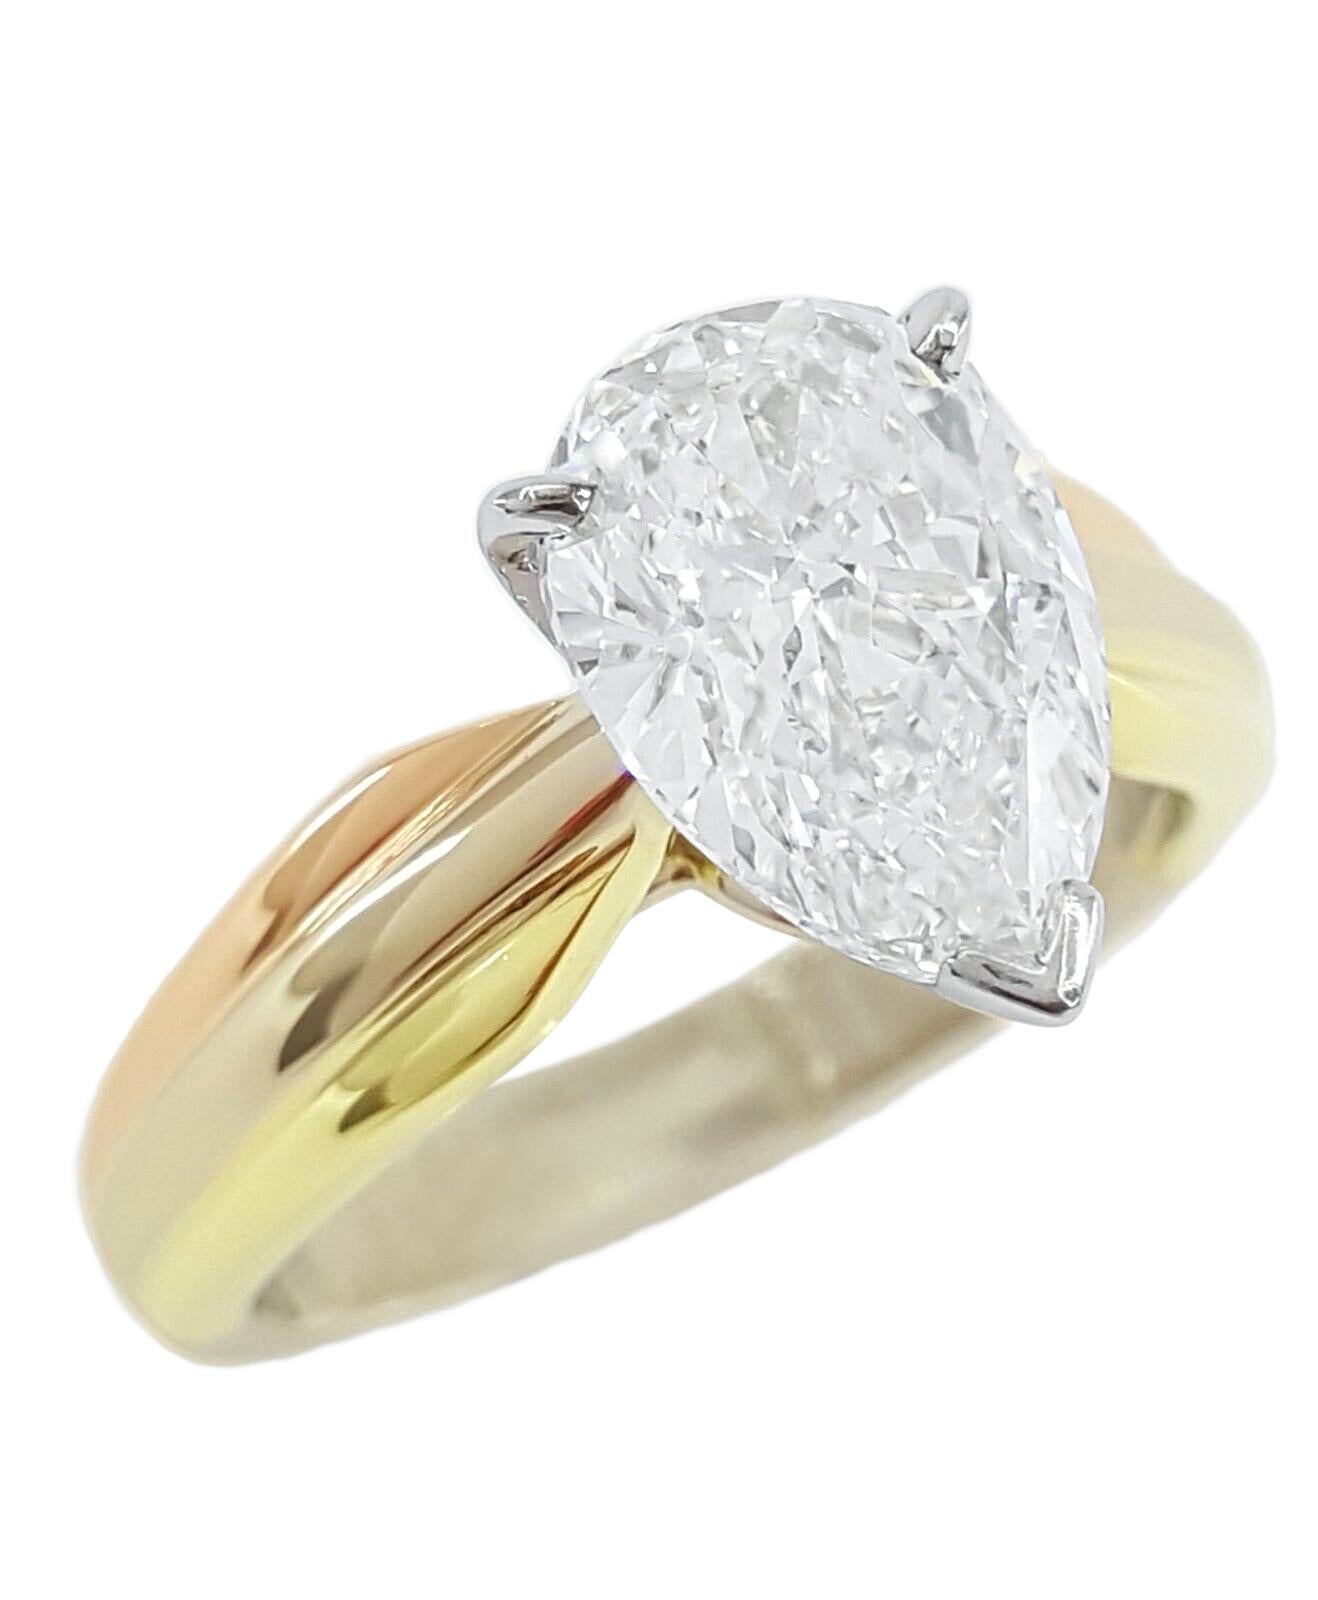 cartier 3 carat diamond ring price